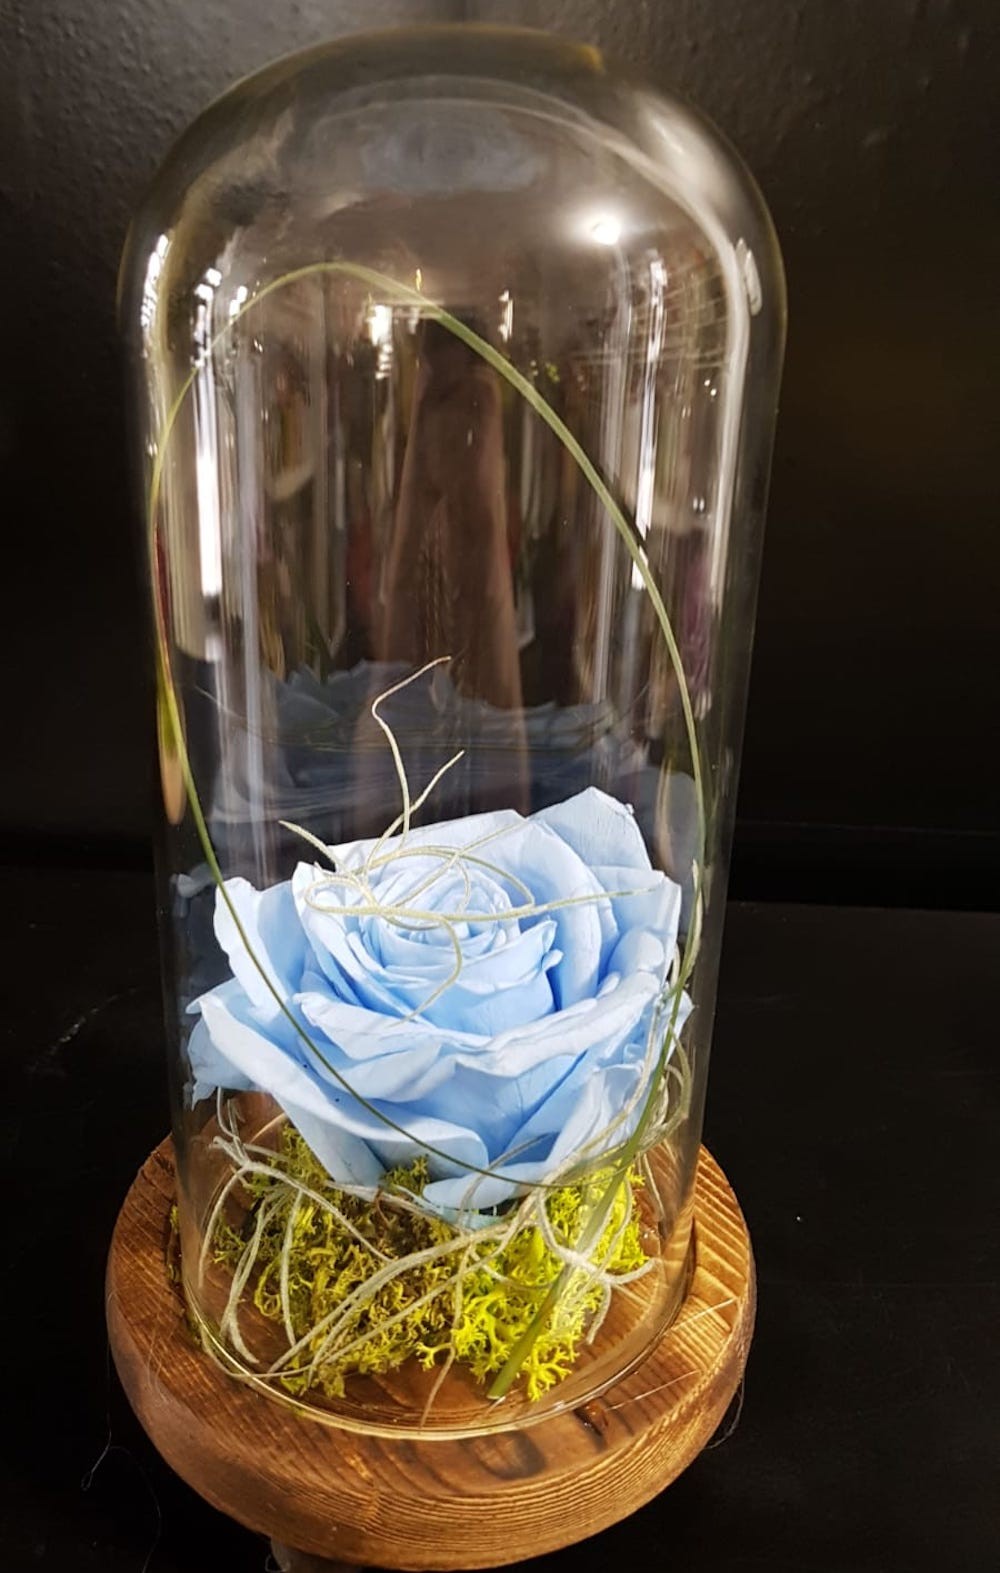 Comanda online trandafir criogenat albastru in cupola de sticla, pret special!